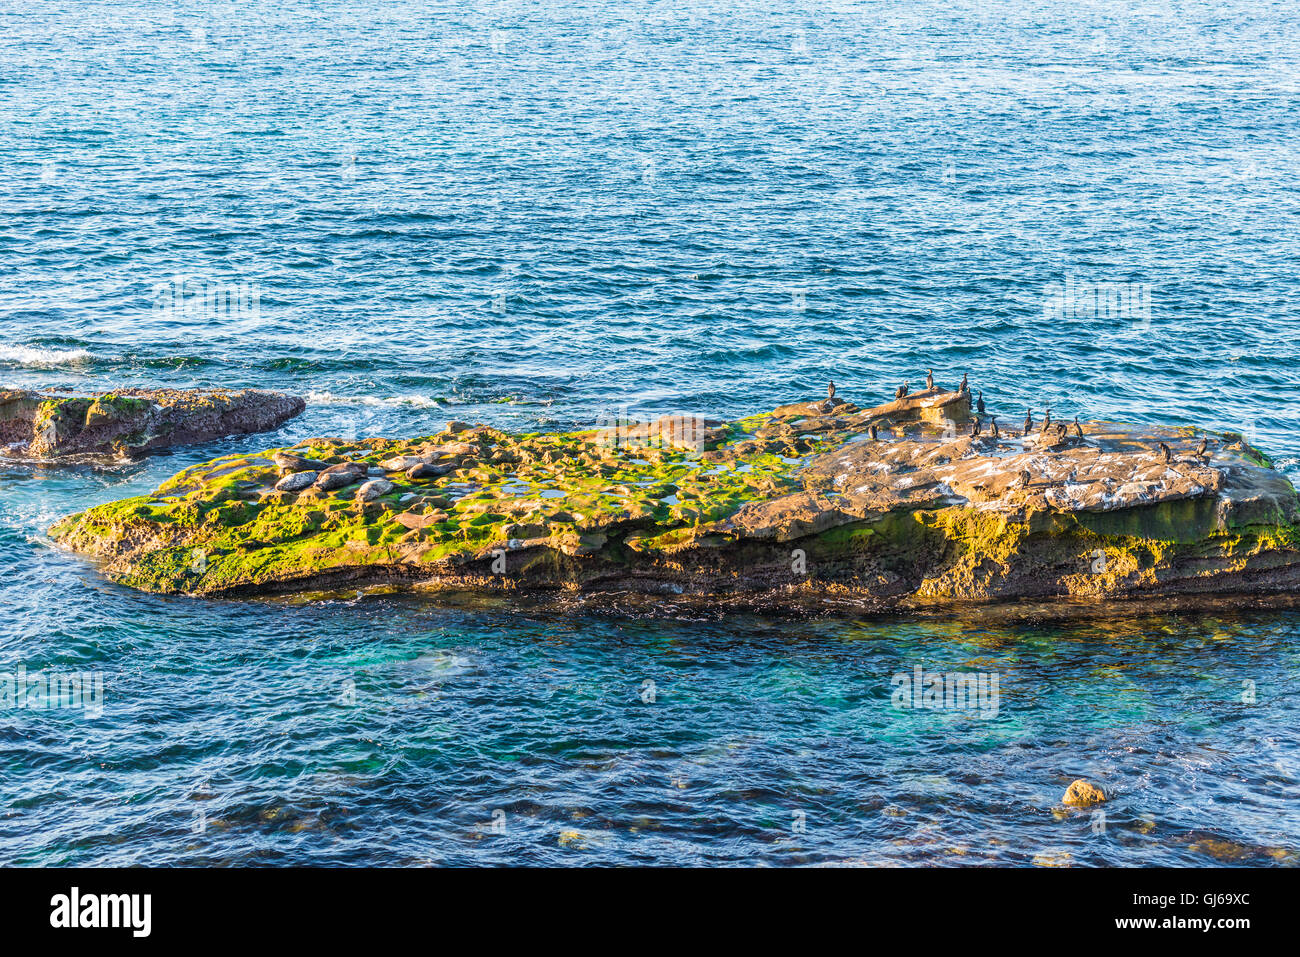 Guarnizione grigio, noto anche come il sigillo dell'Atlantico. La vita selvatica animale. Foto Stock